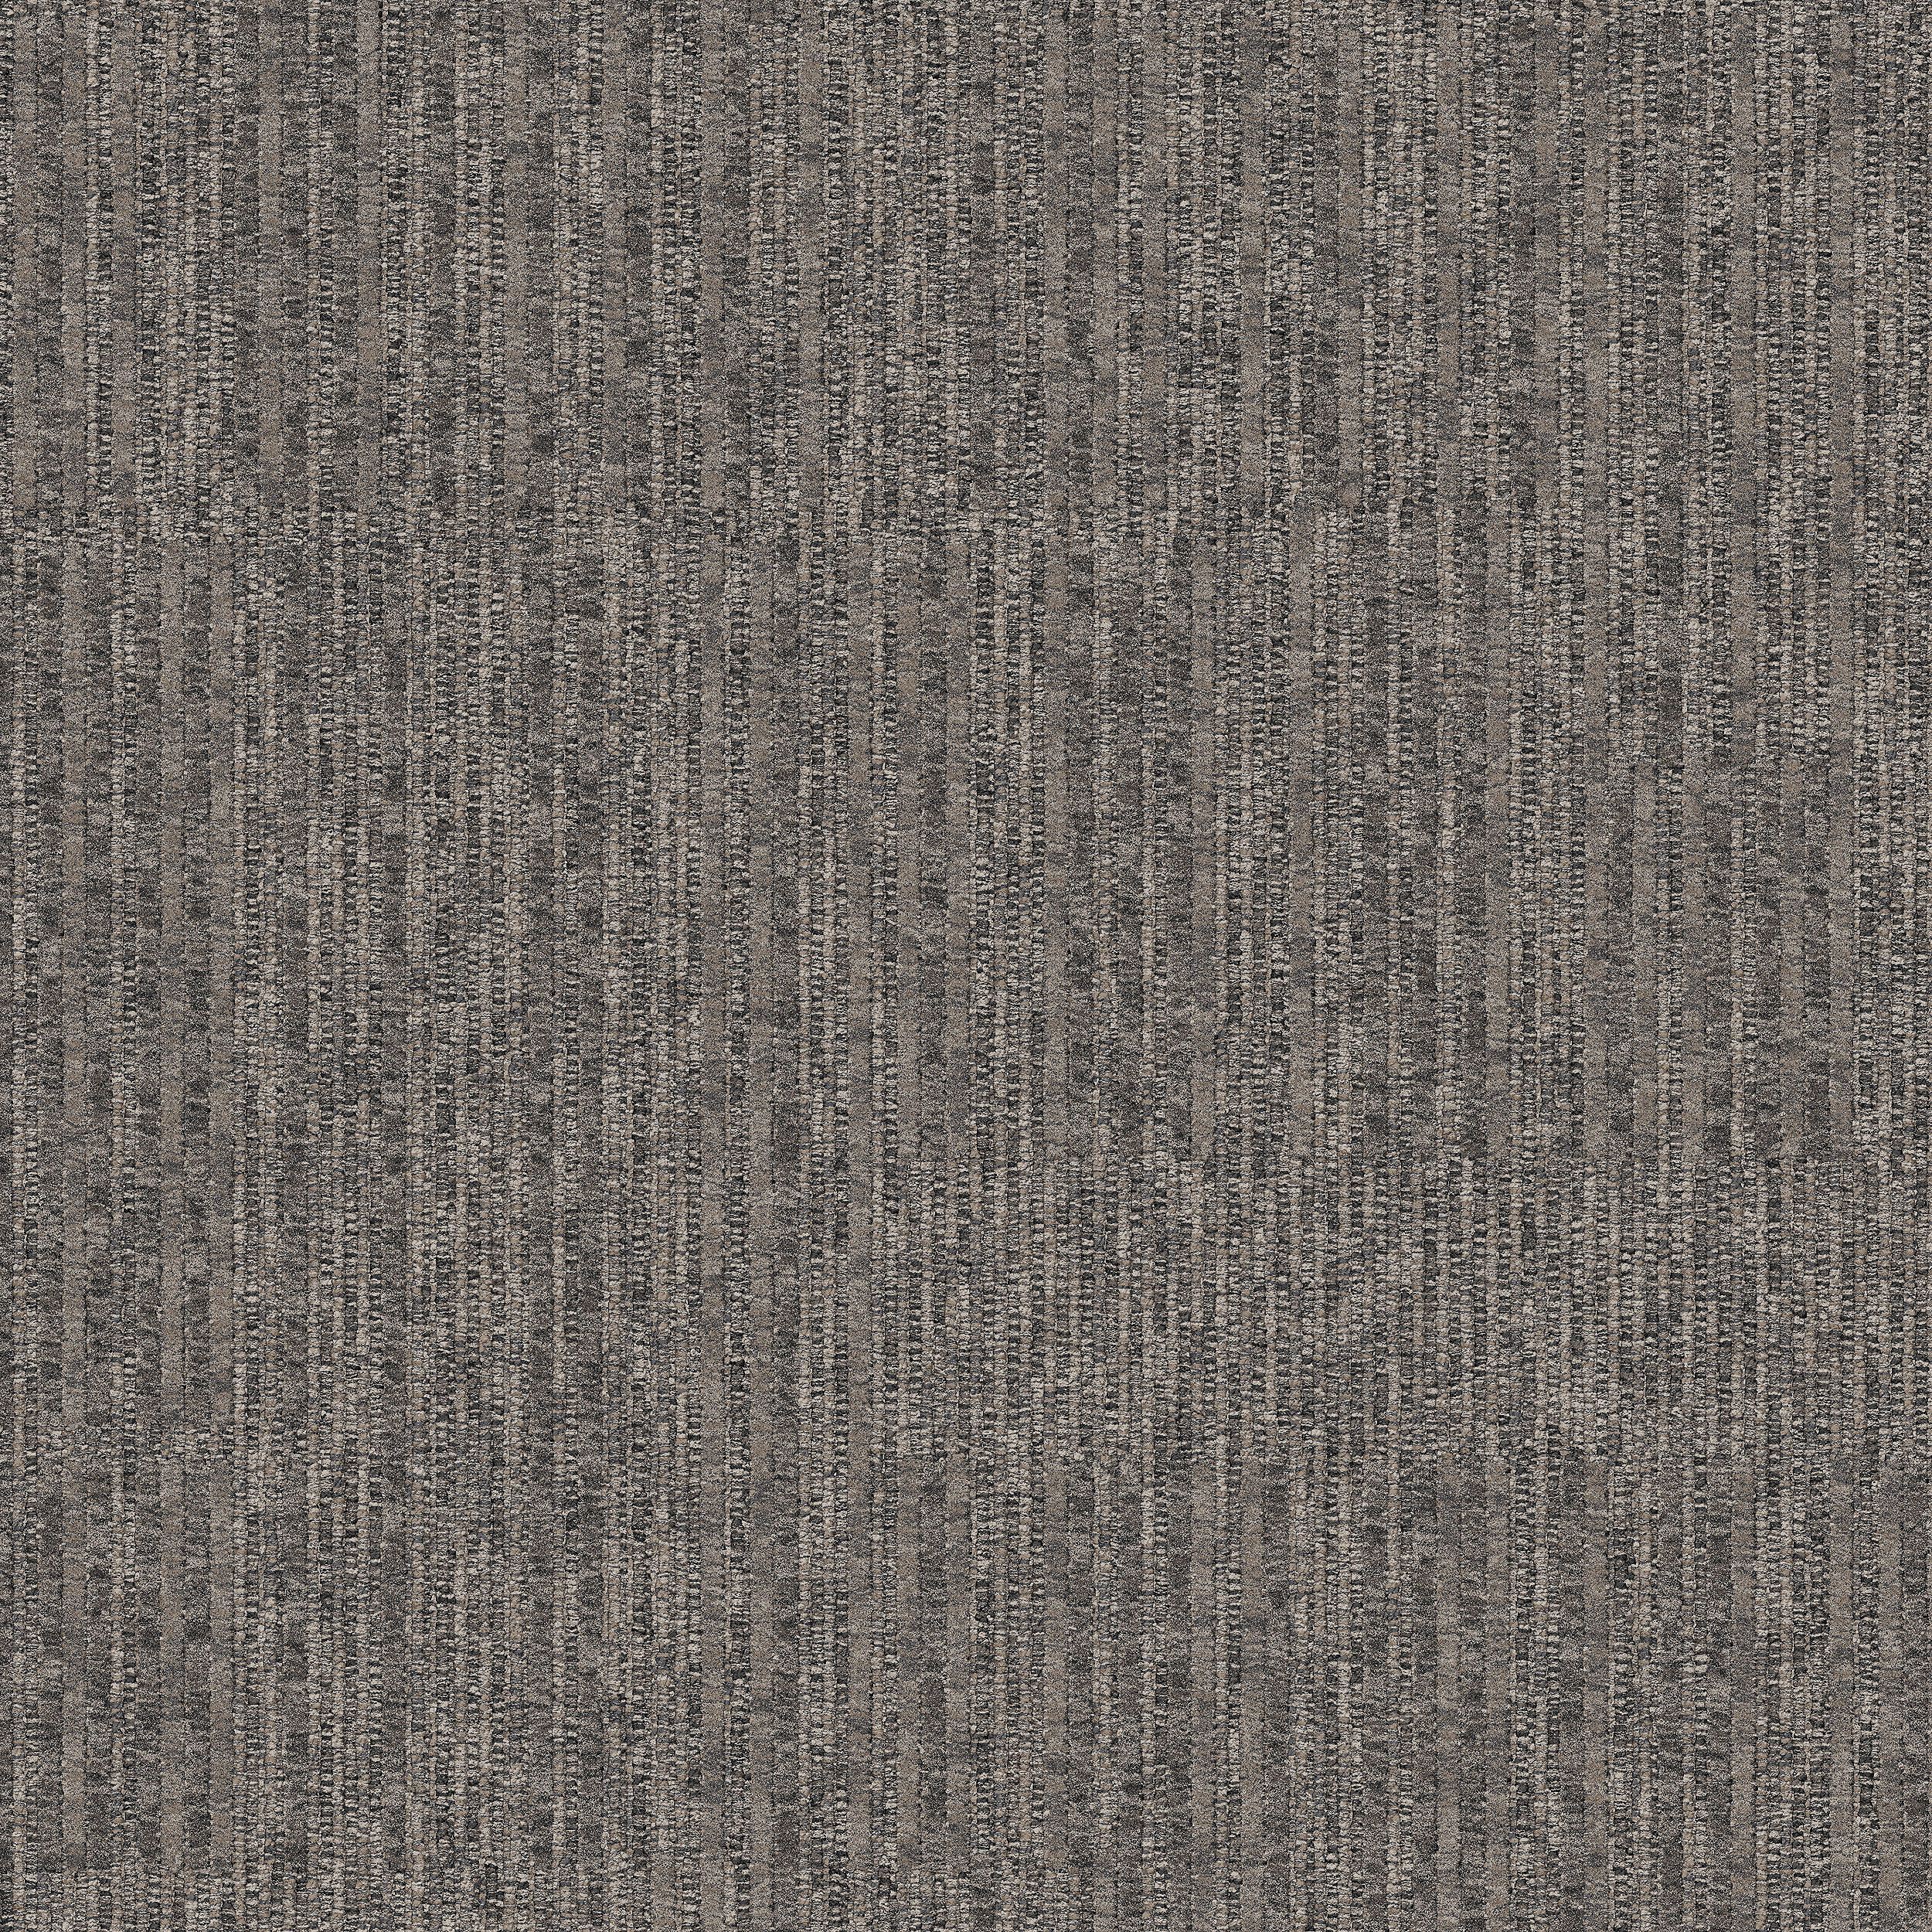 Equilibrium Carpet Tile In Persistence número de imagen 9